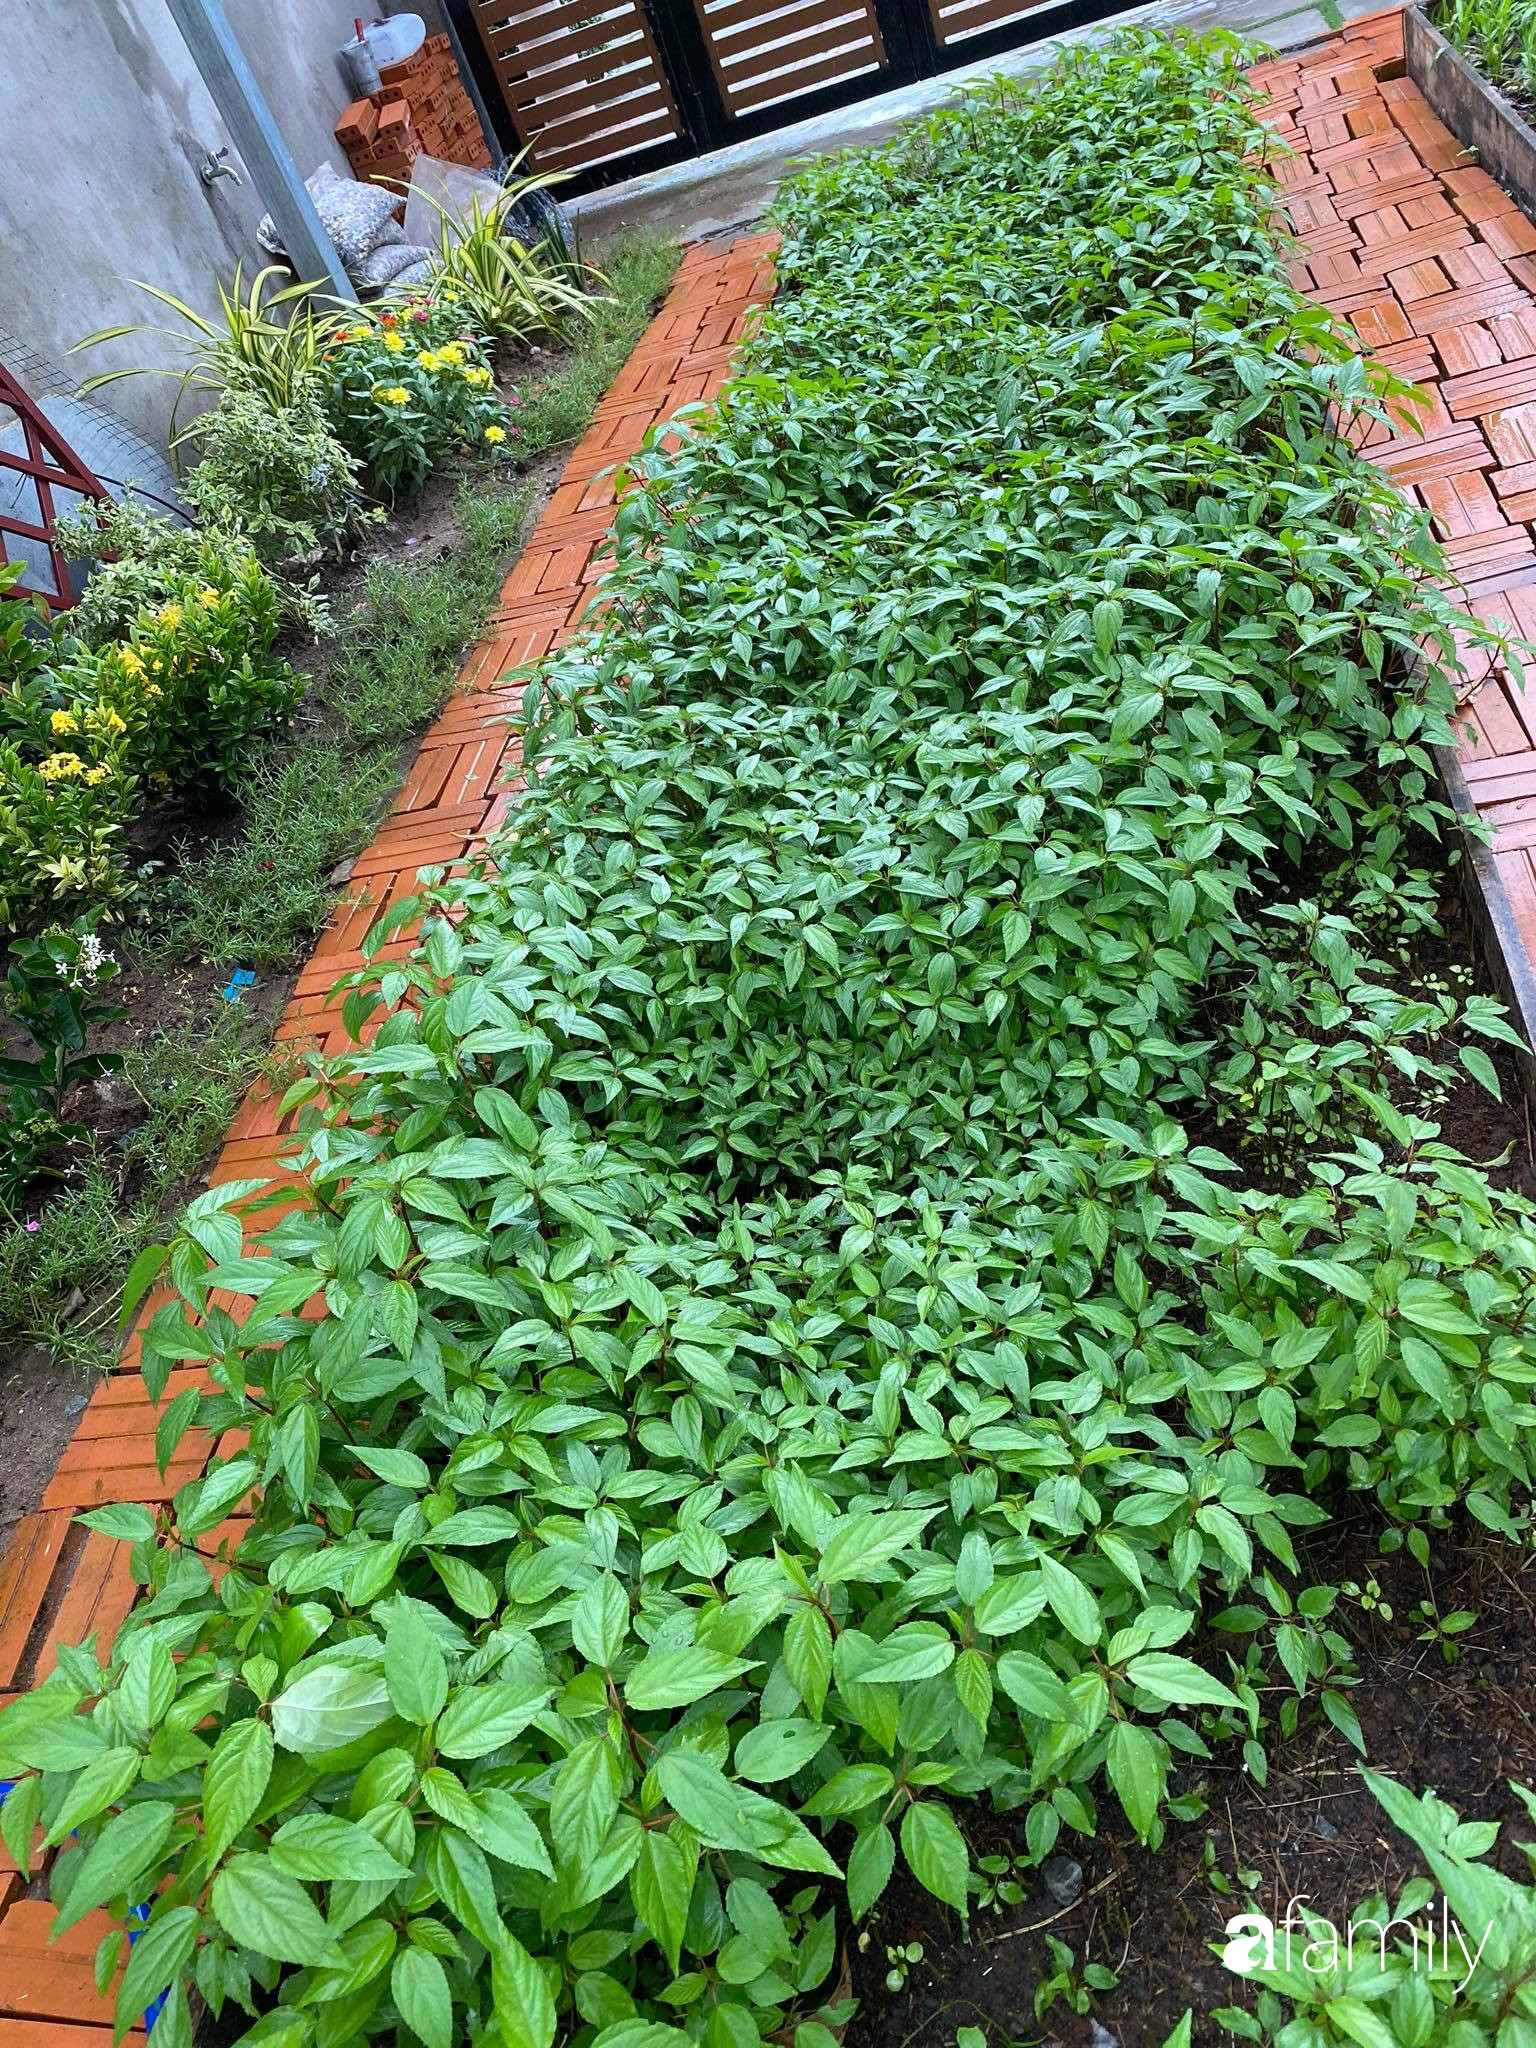 Con gái chi 500 triệu đồng xây nhà vườn container để bố về hưu thỏa mãn đam mê trồng rau ở Sài Gòn - Ảnh 8.